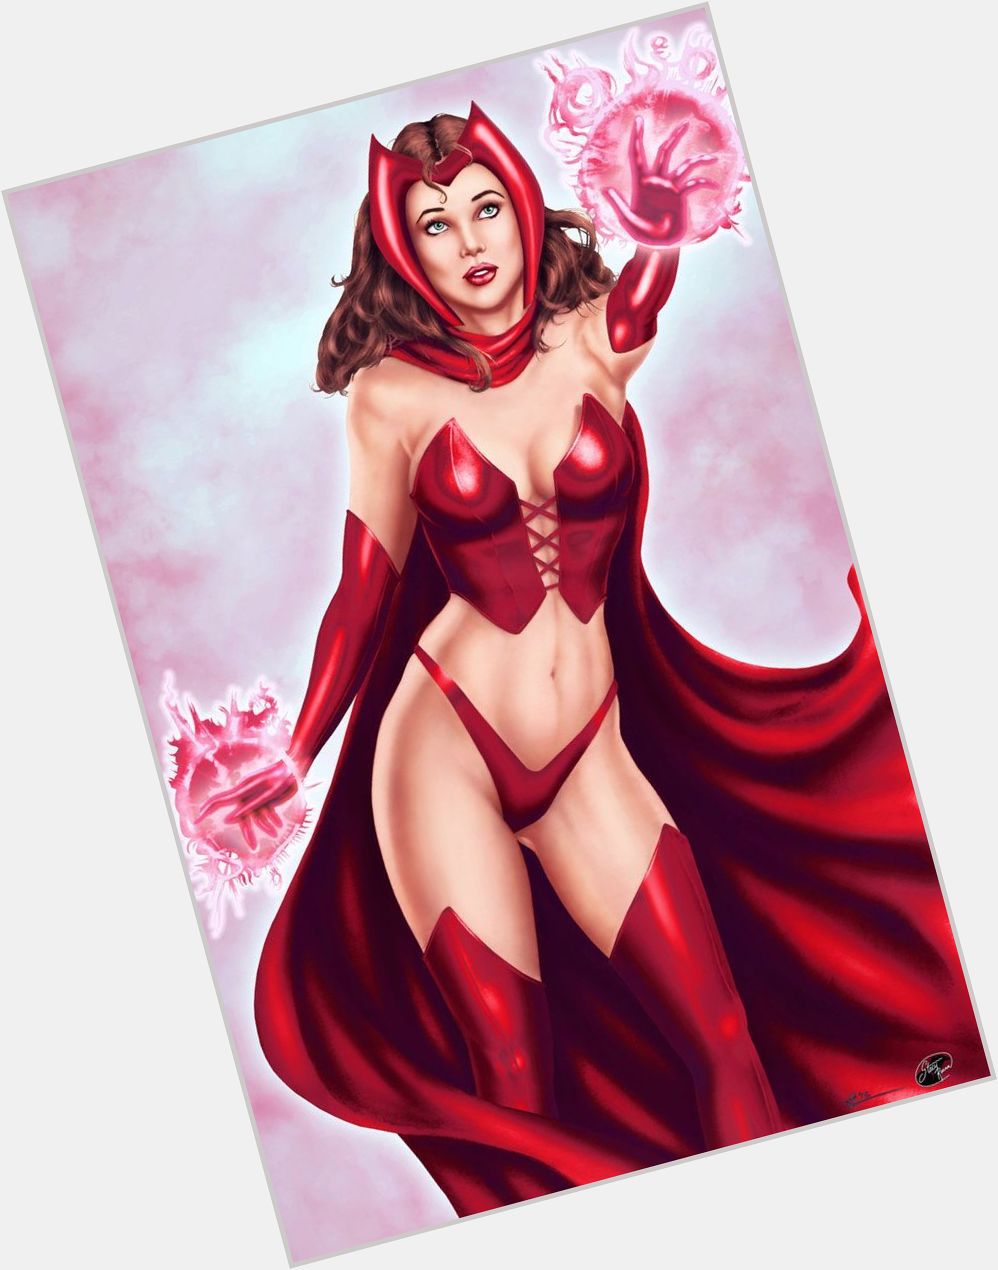 Scarlet Witch shirtless bikini